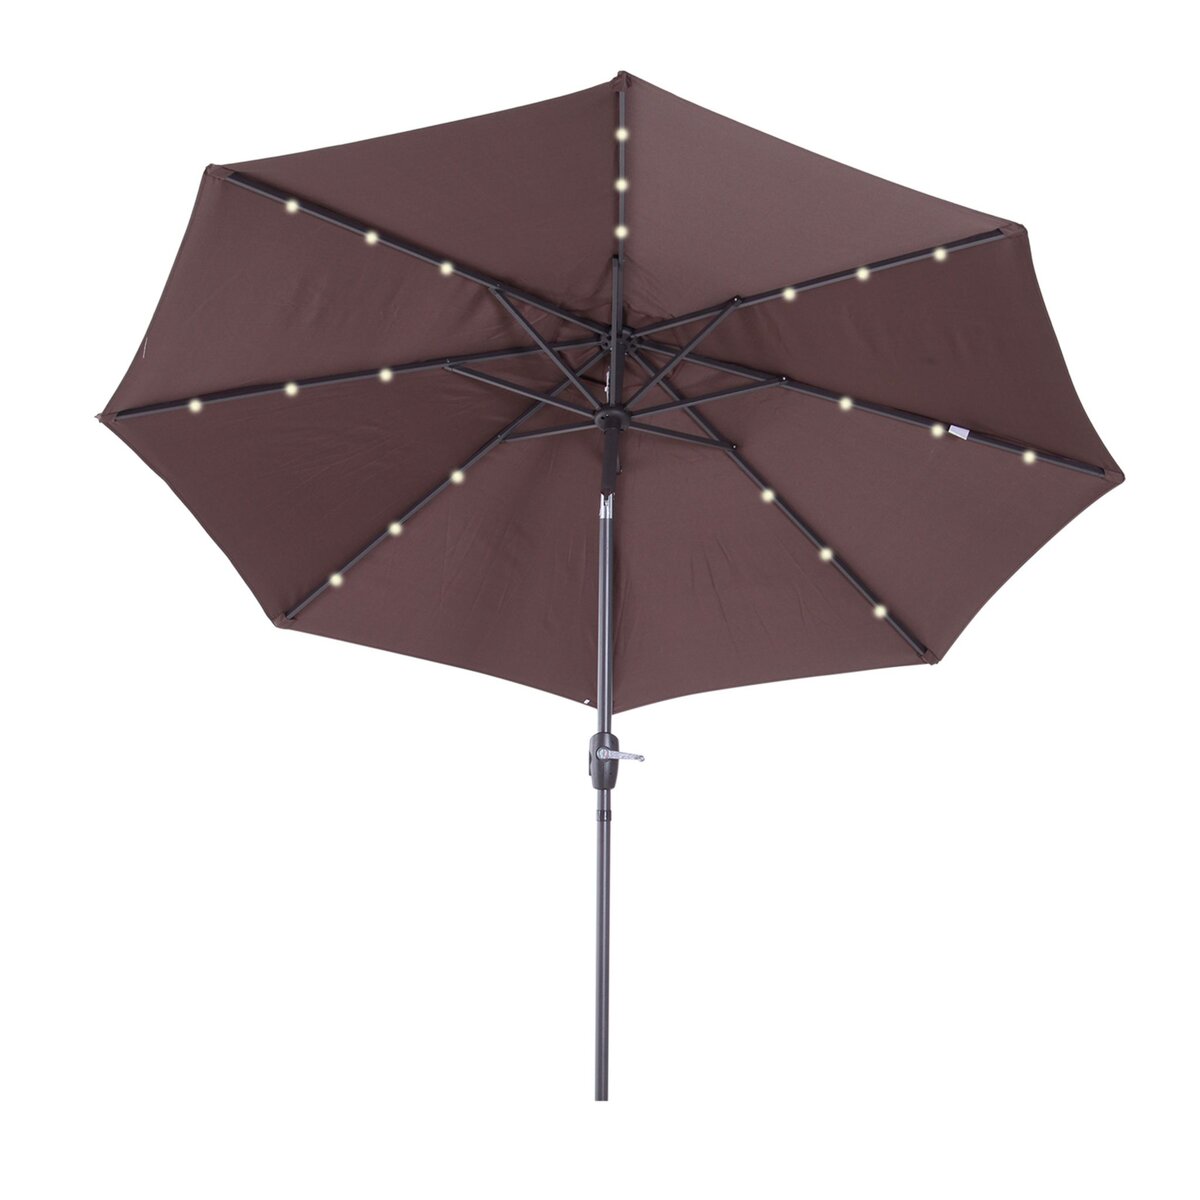 OUTSUNNY Parasol lumineux octogonal inclinable Ø 2,75 x 2,33 m parasol LED solaire métal polyester haute densité 180 g/m² chocolat